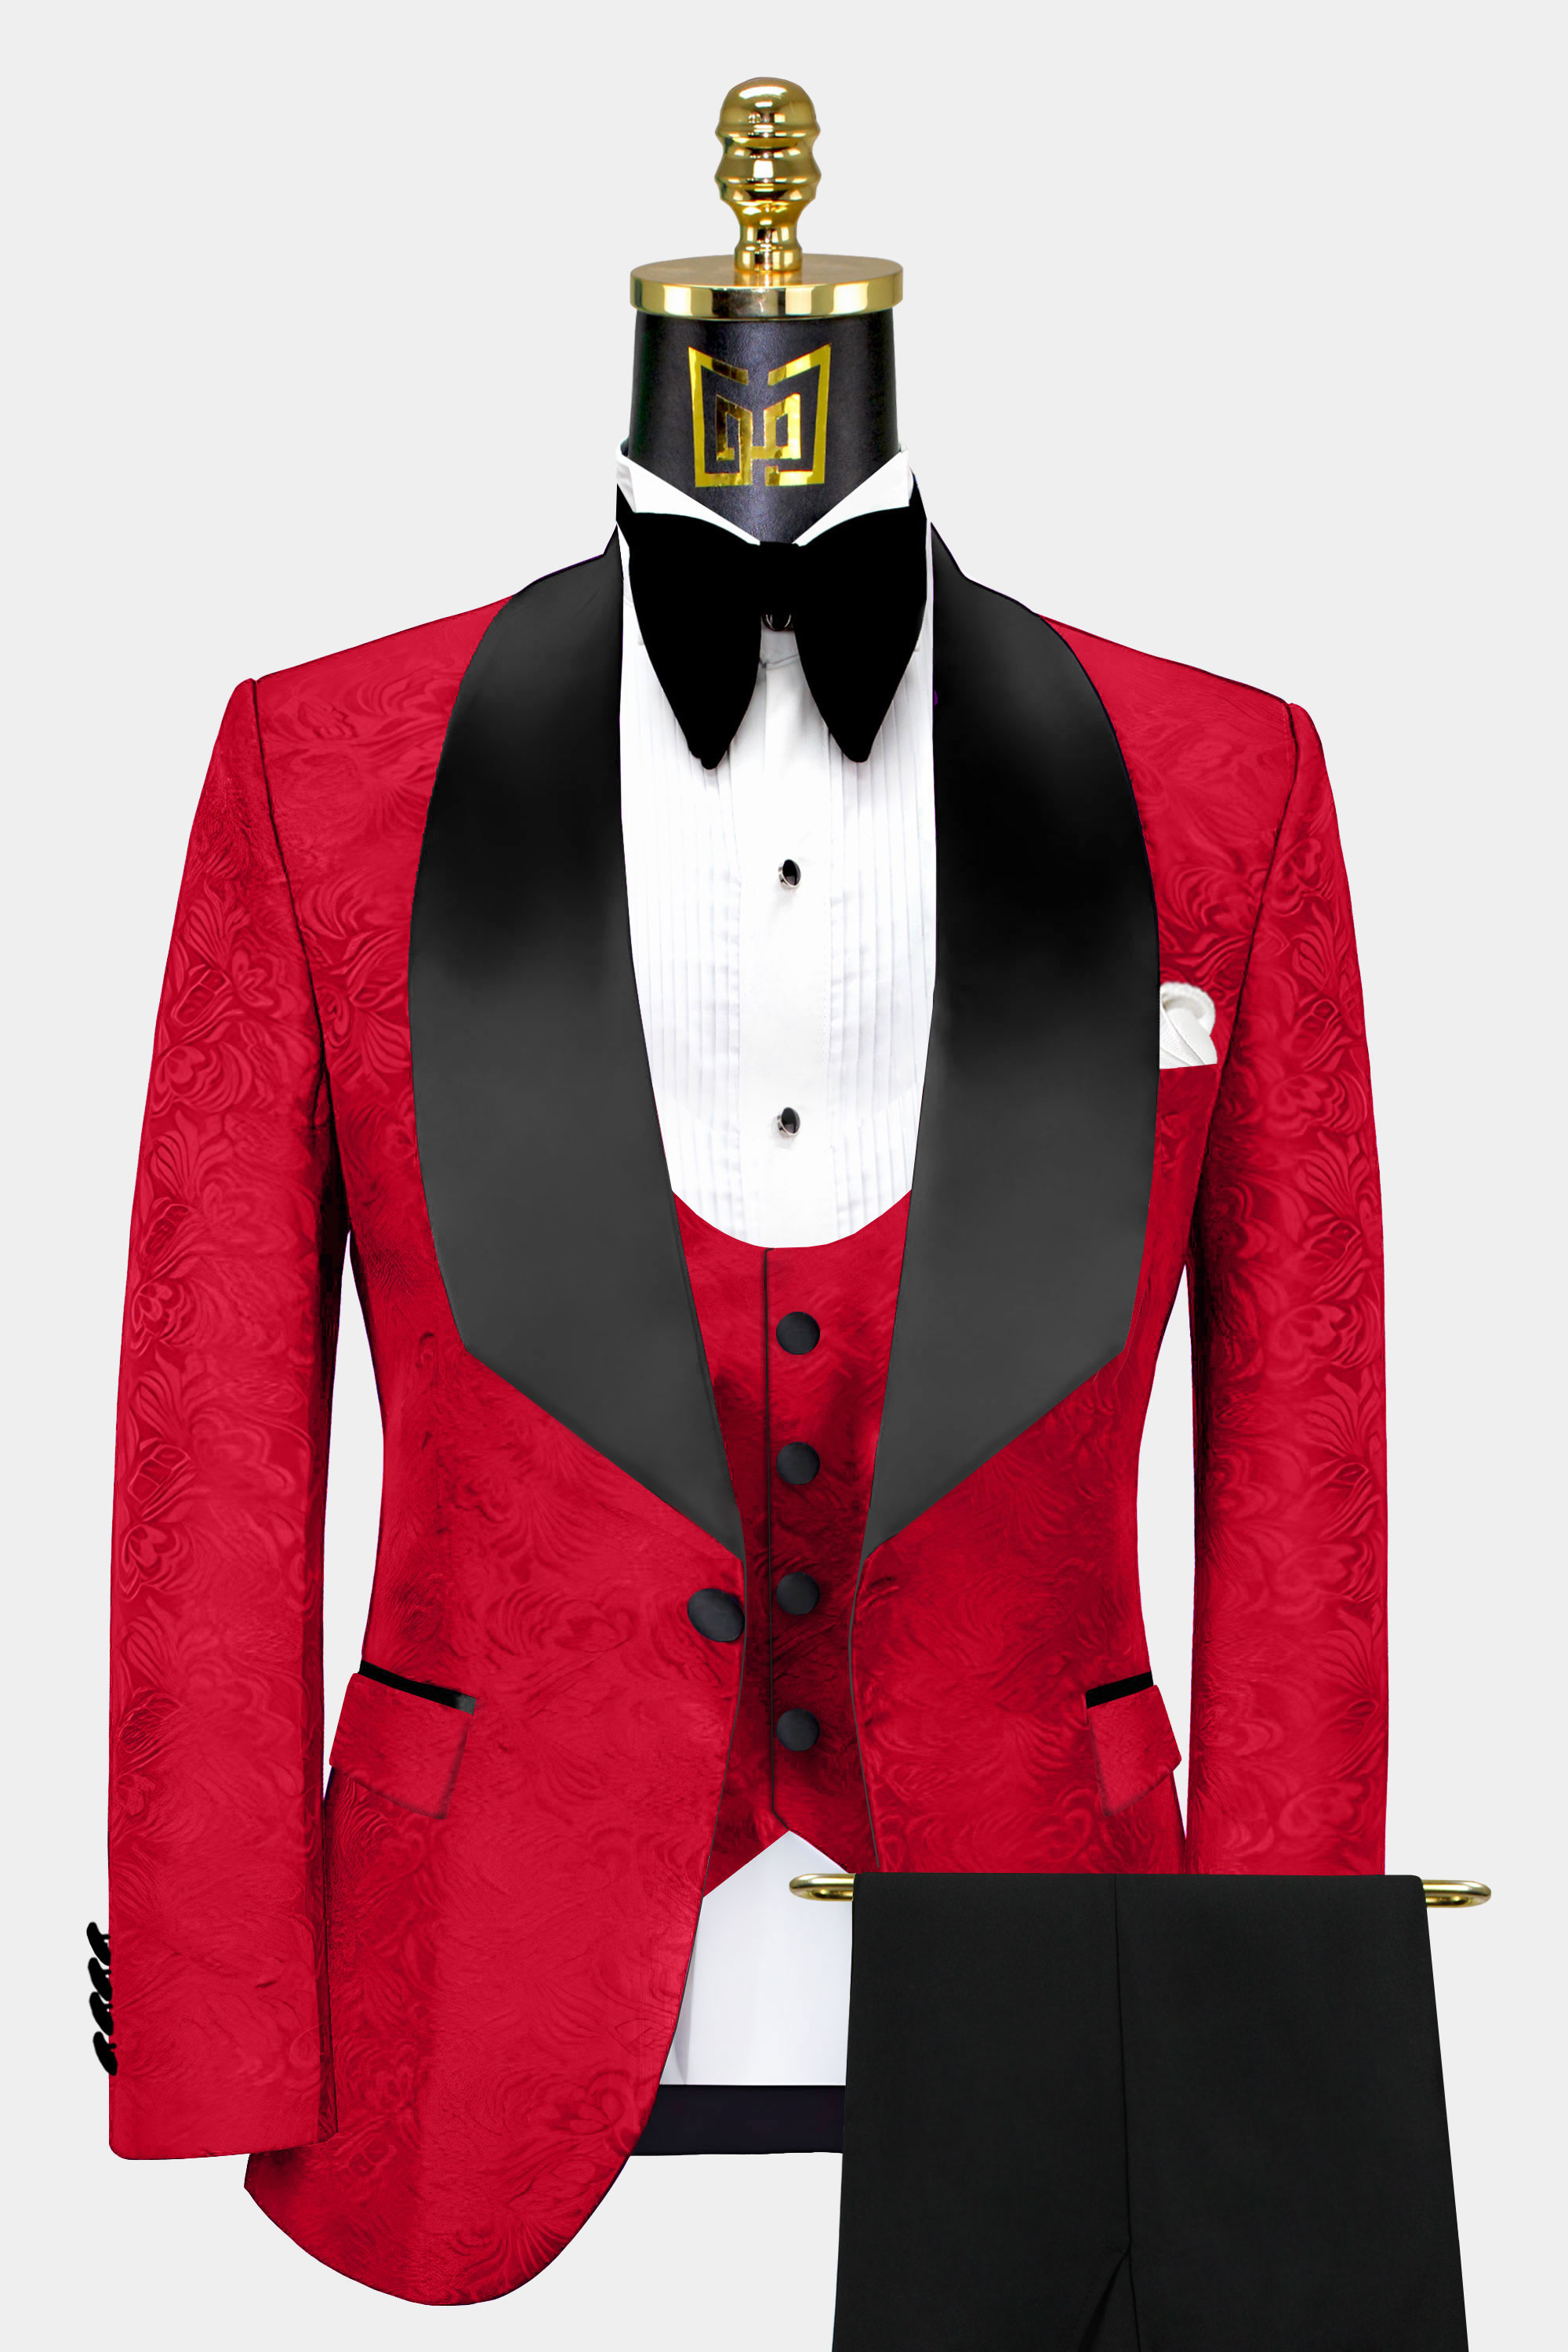 Black-and-Red-Tuxedo-Wedding-Groom-Prom-Suit-from-Gentlemansguru.com